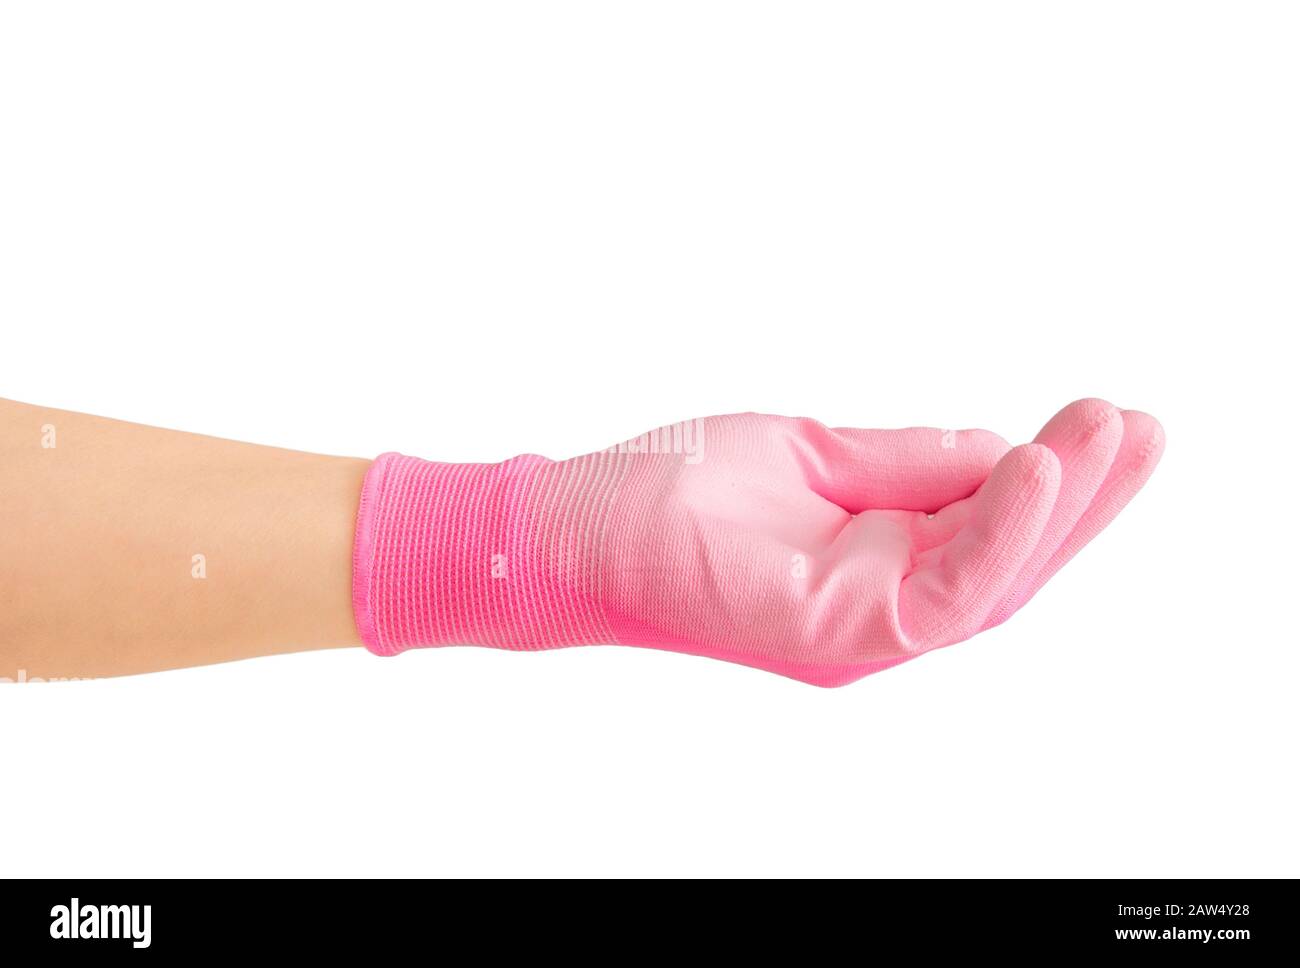 Femme gestuelle à la main et tenant quelque chose sur la paume de la main, portant des gants de jardinage en caoutchouc rose de travail de paume de textile. Isolé sur blanc avec spa Copy Banque D'Images